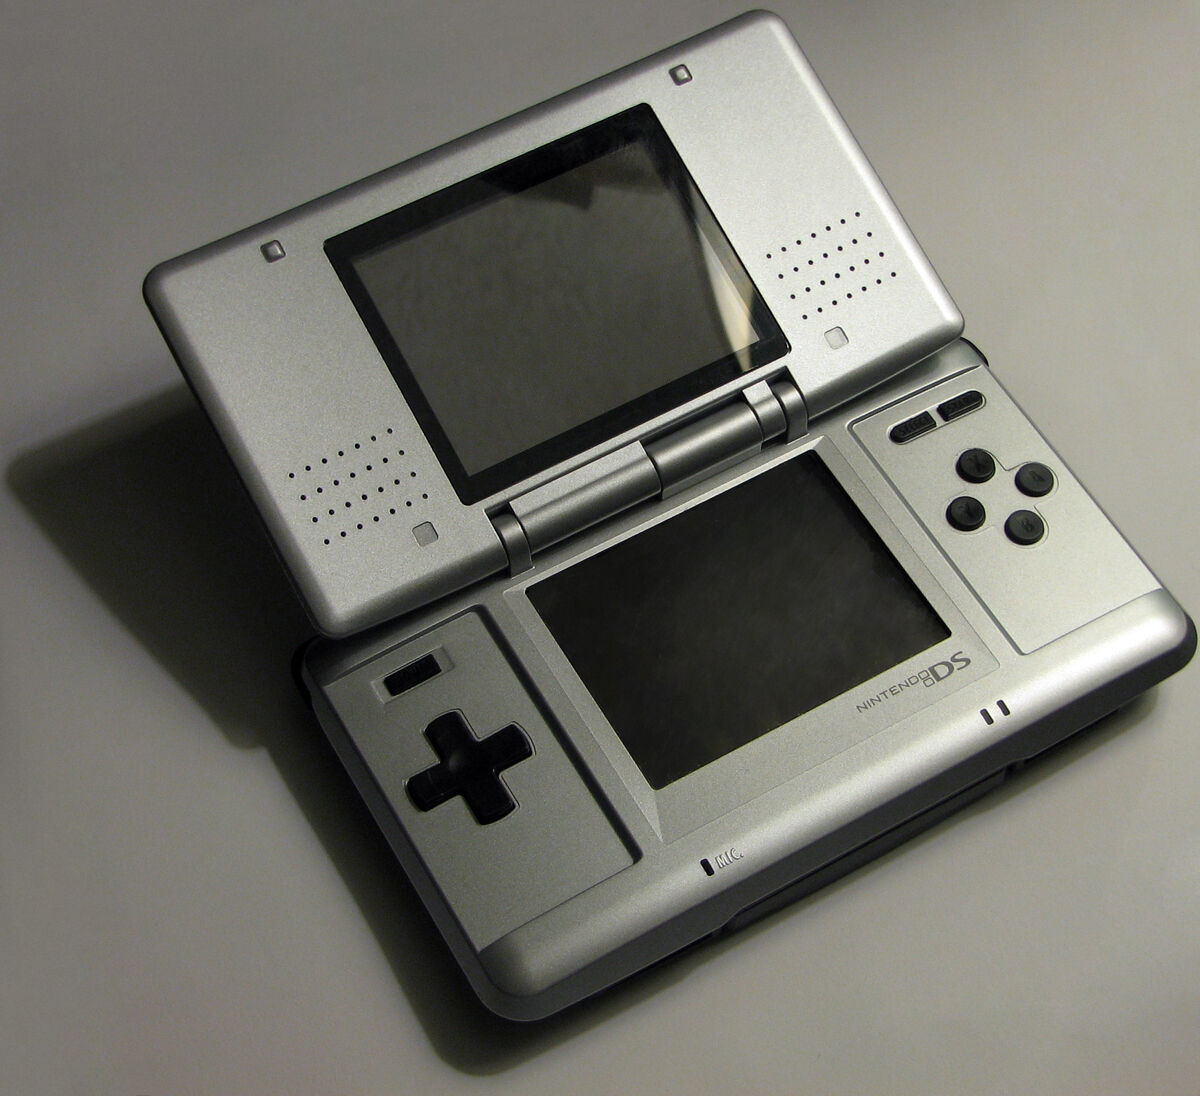 Lista de consoles de jogos eletrônicos da Nintendo – Wikipédia, a